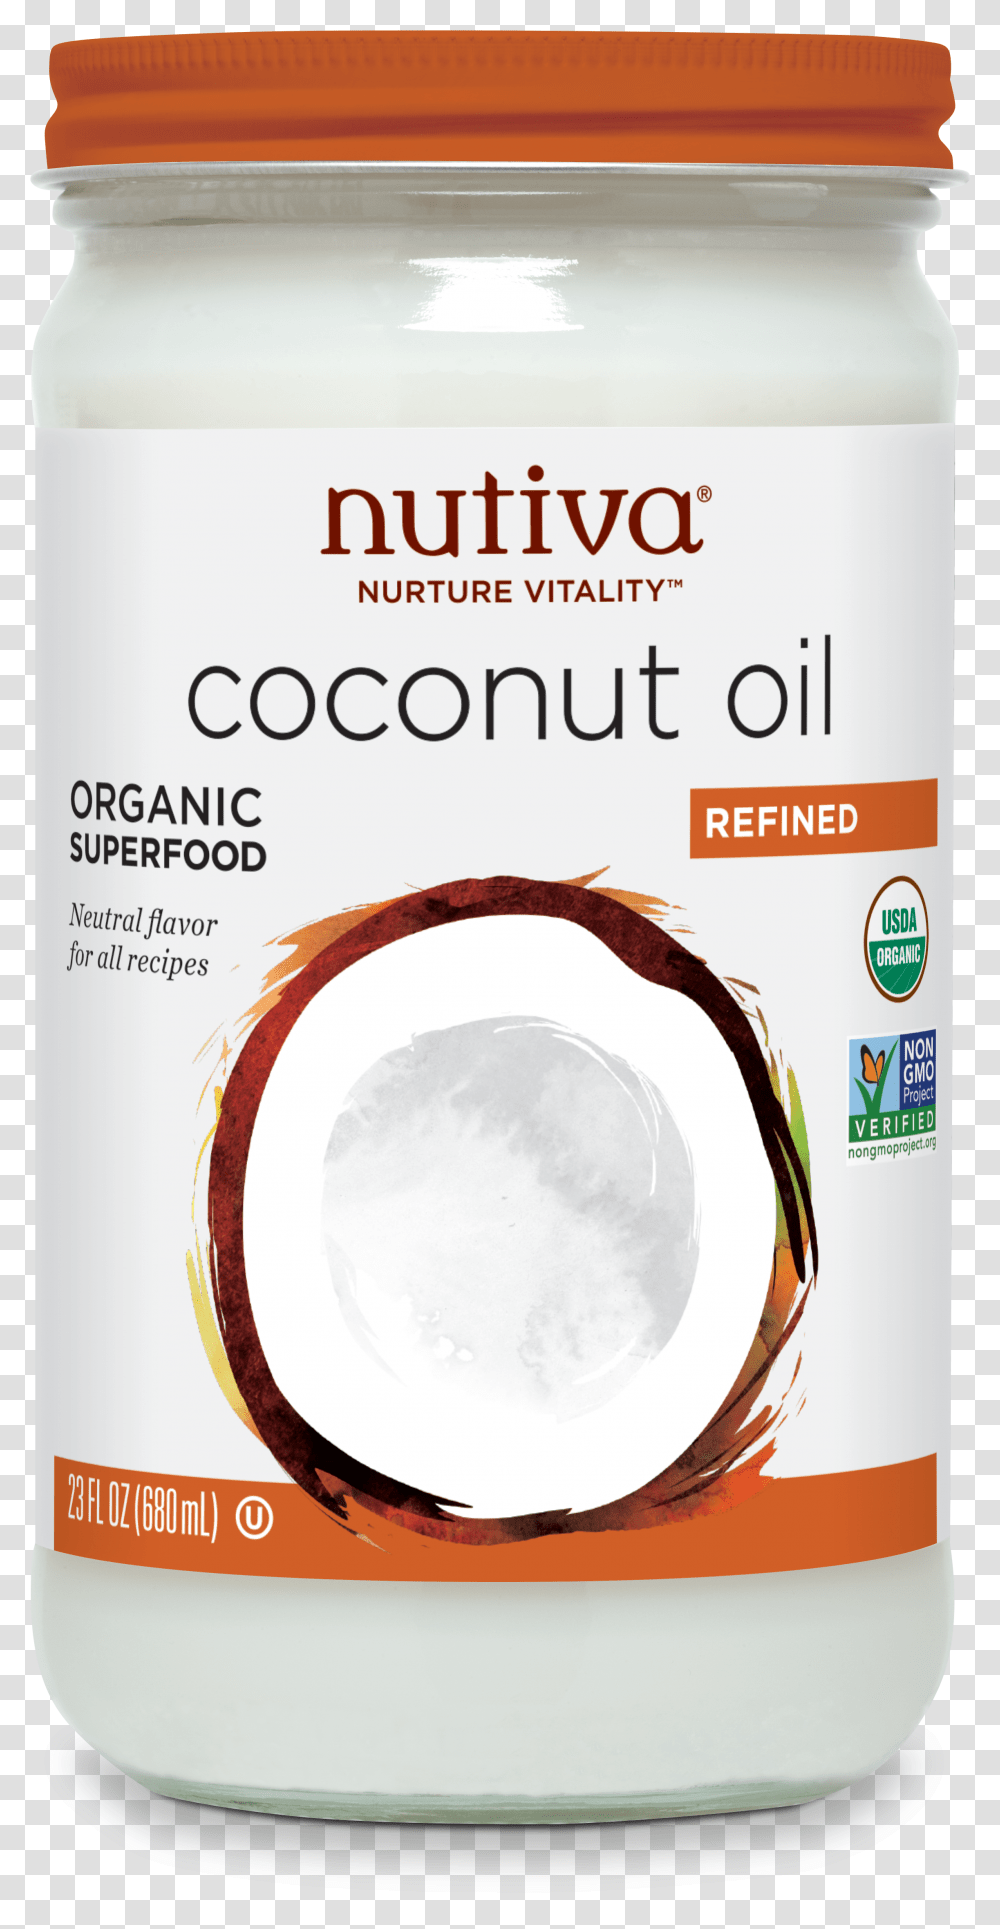 Nutiva Refined Coconut Oil Nutiva Nutiva Coconut Oil Transparent Png